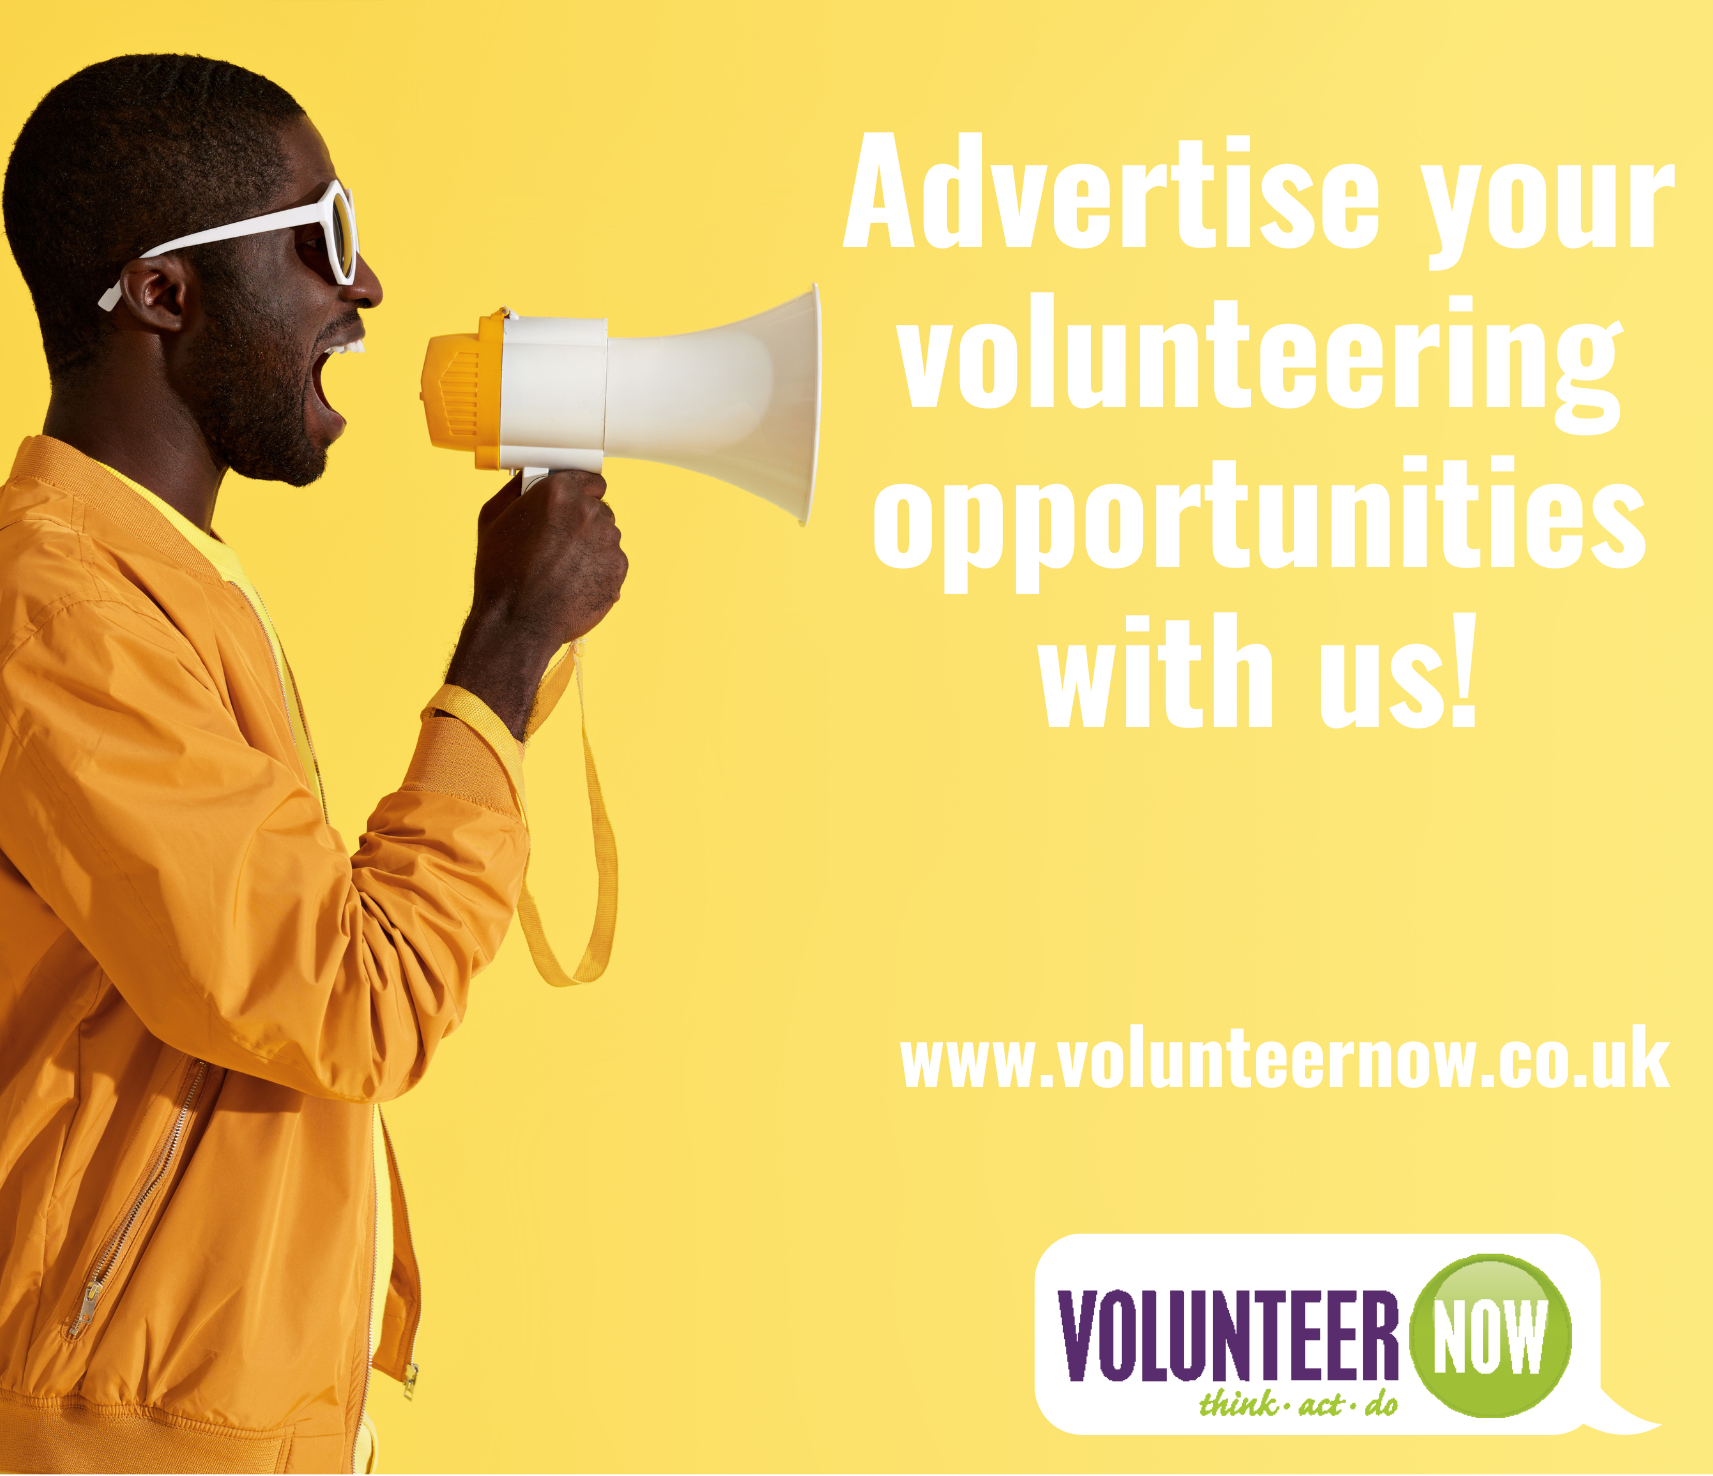 Volunteer Now Advertise your volunteering opportunities with us